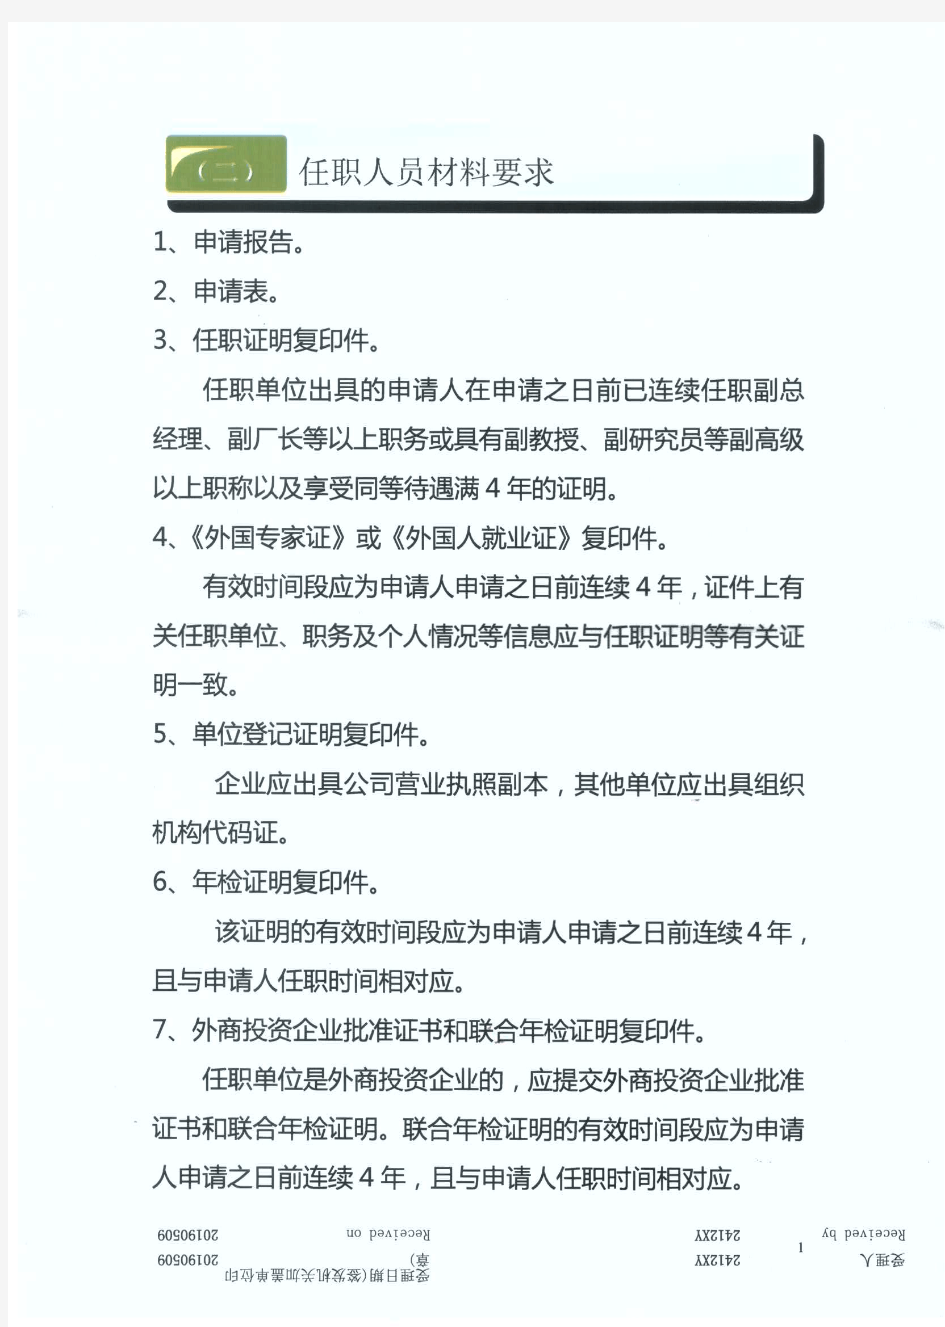 外籍人员申请在华永久居留证材料清单